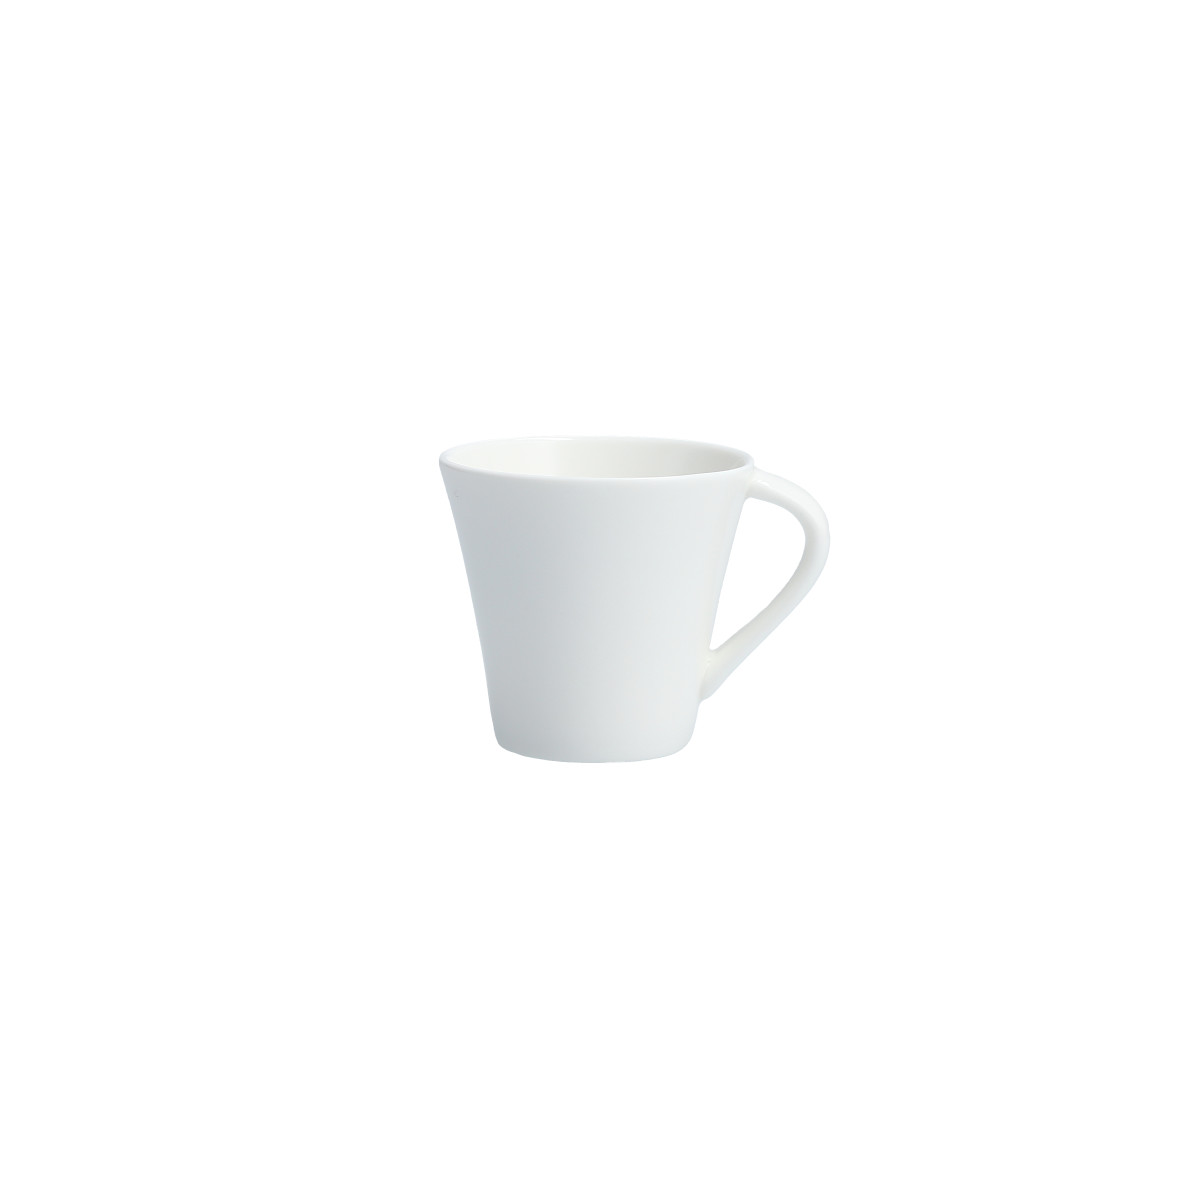 Tavola Espresso Cup 3oz